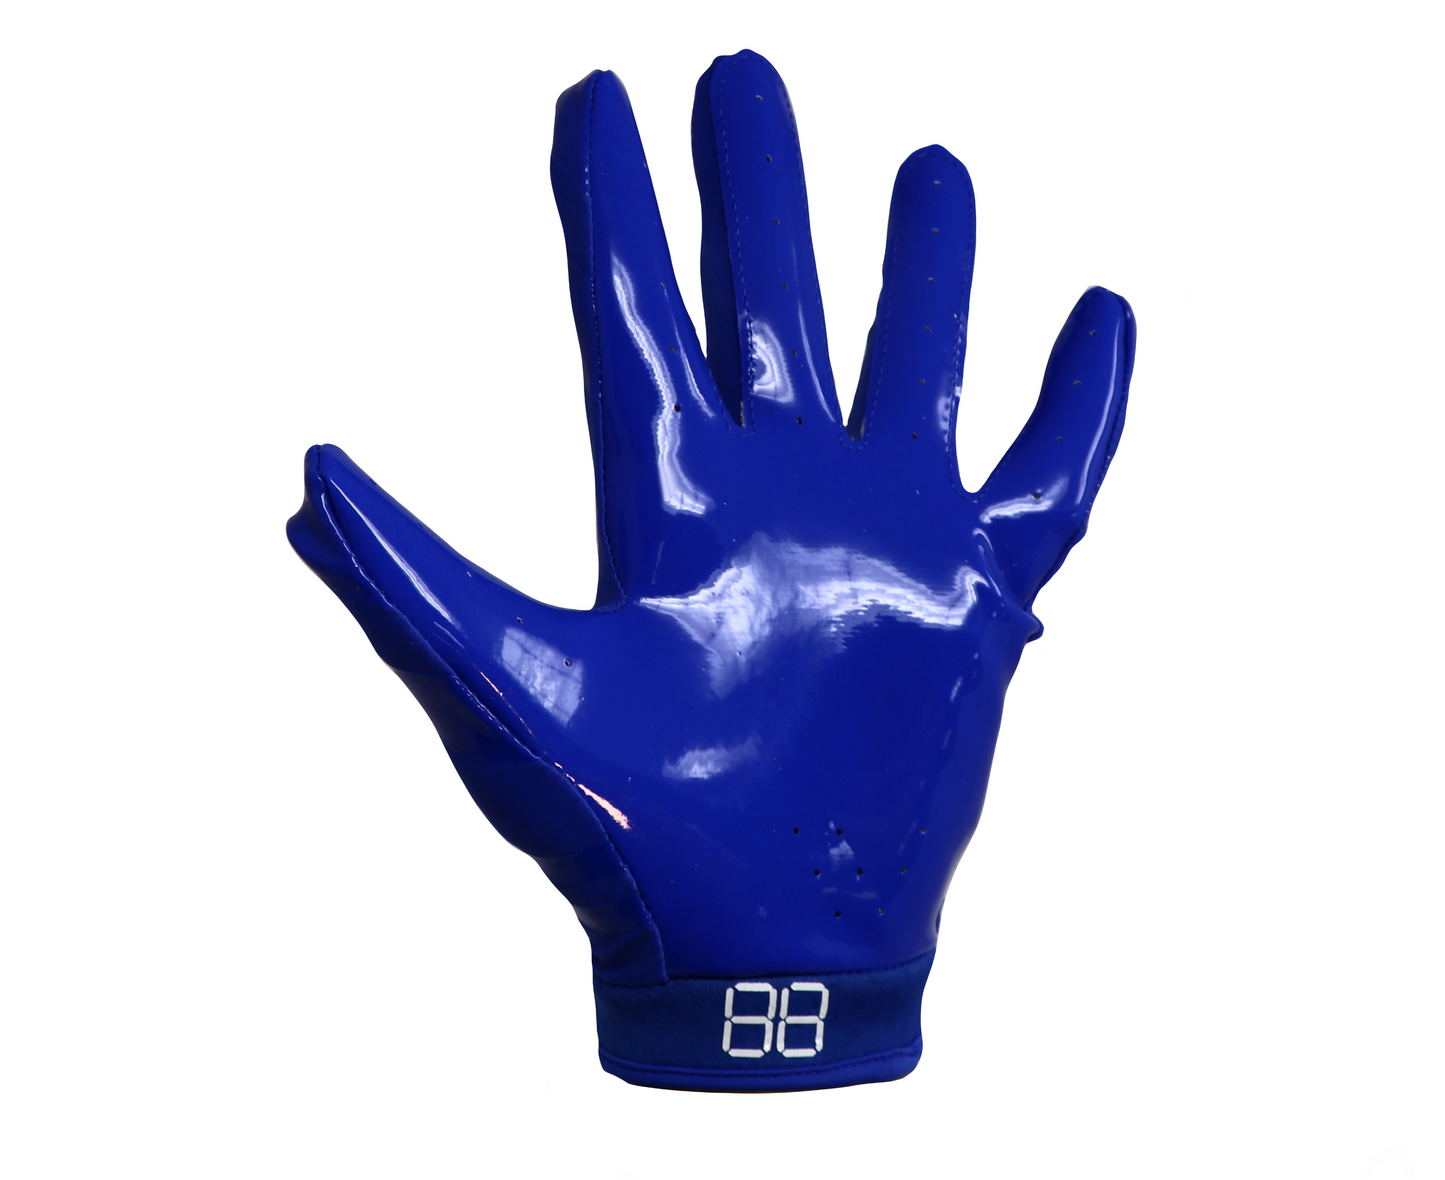 FRG-03 gants de football américain de pro receveur, RE,DB ,RB, Bleu